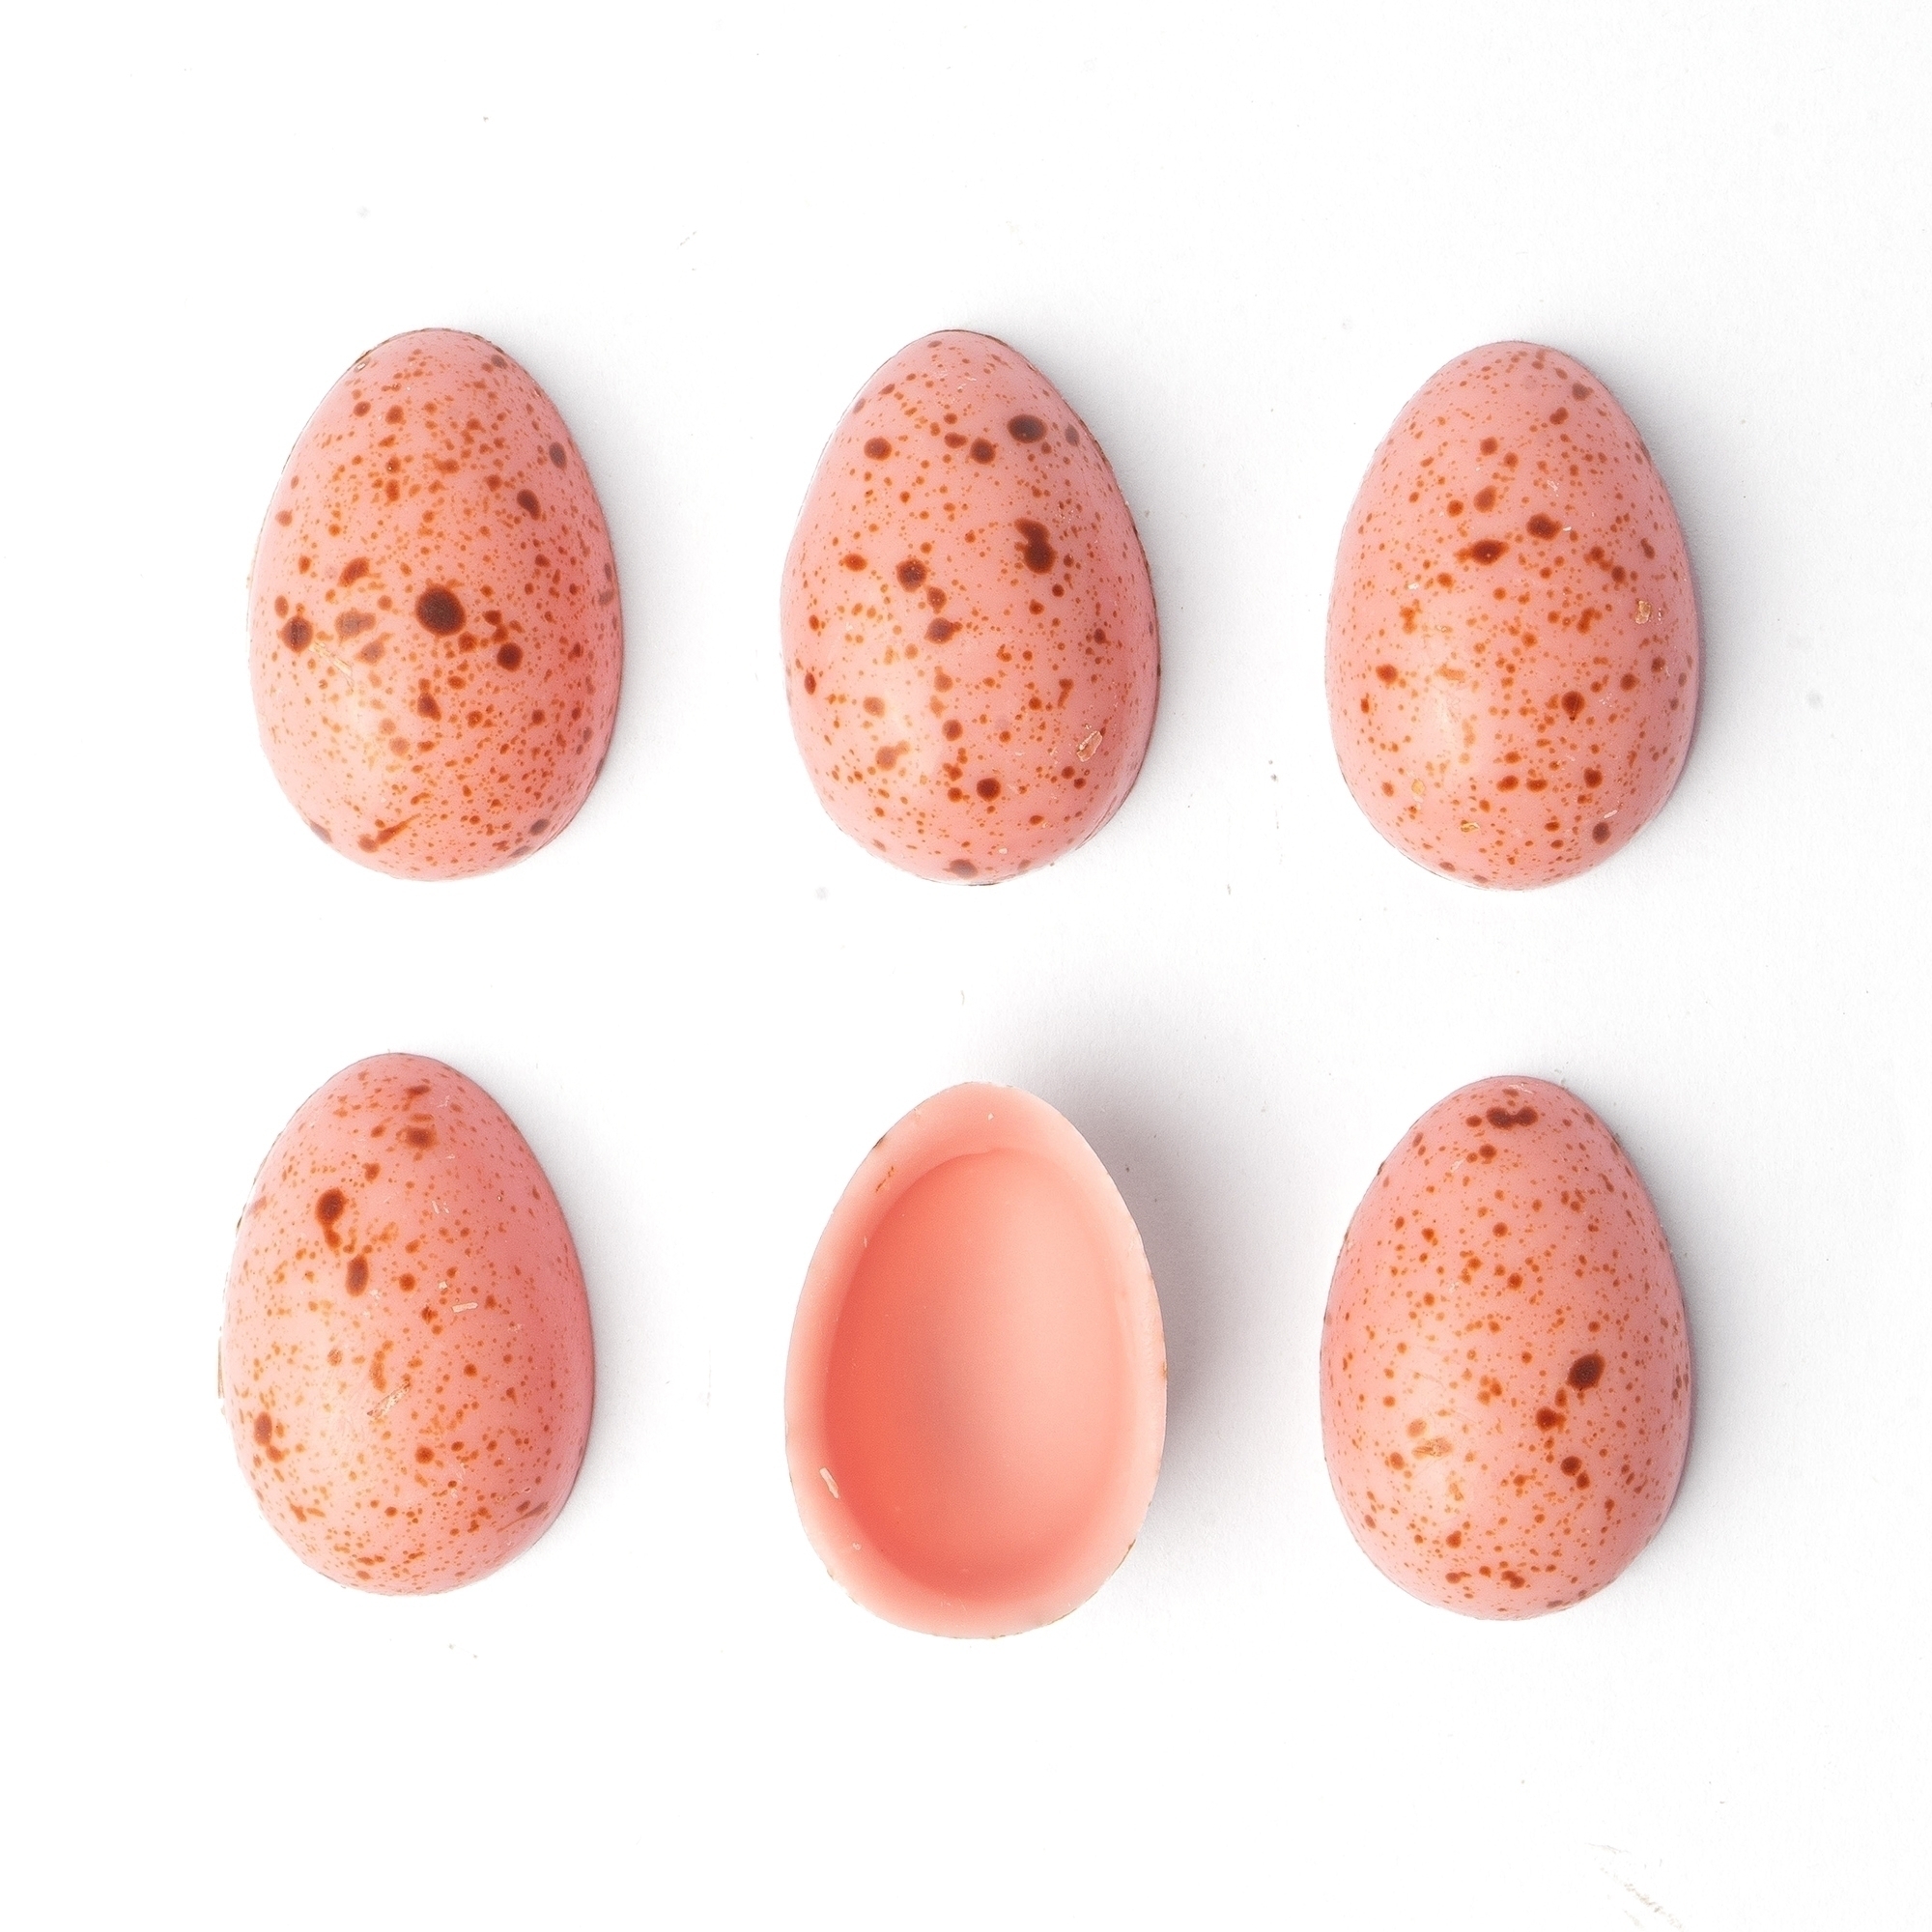 Яйца шоколадные «Колибри»  розовые 3,3х2,2 см, Dobla, Бельгия, 3 шт. (6 половинок)  | Фото — Магазин Andy Chef  1